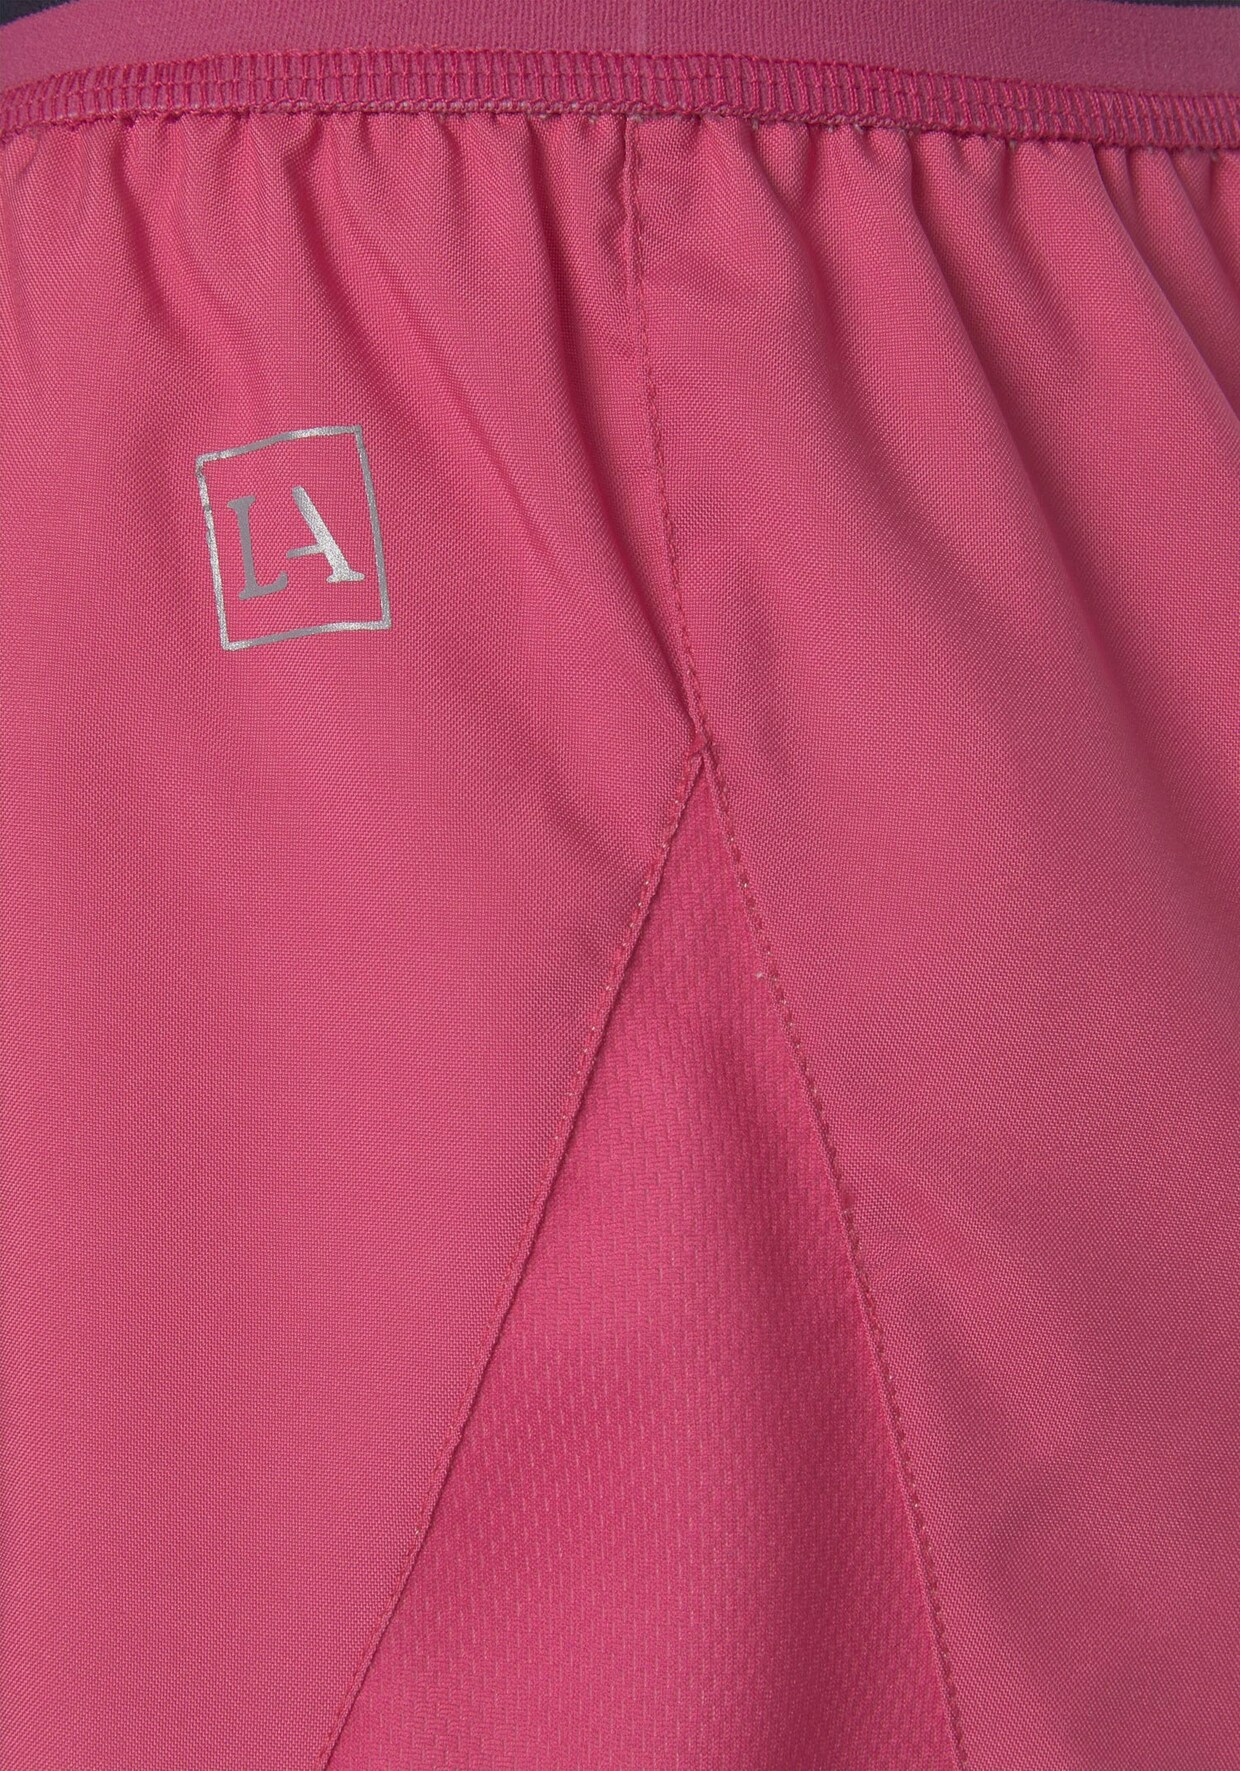 LASCANA ACTIVE Shorts - pink